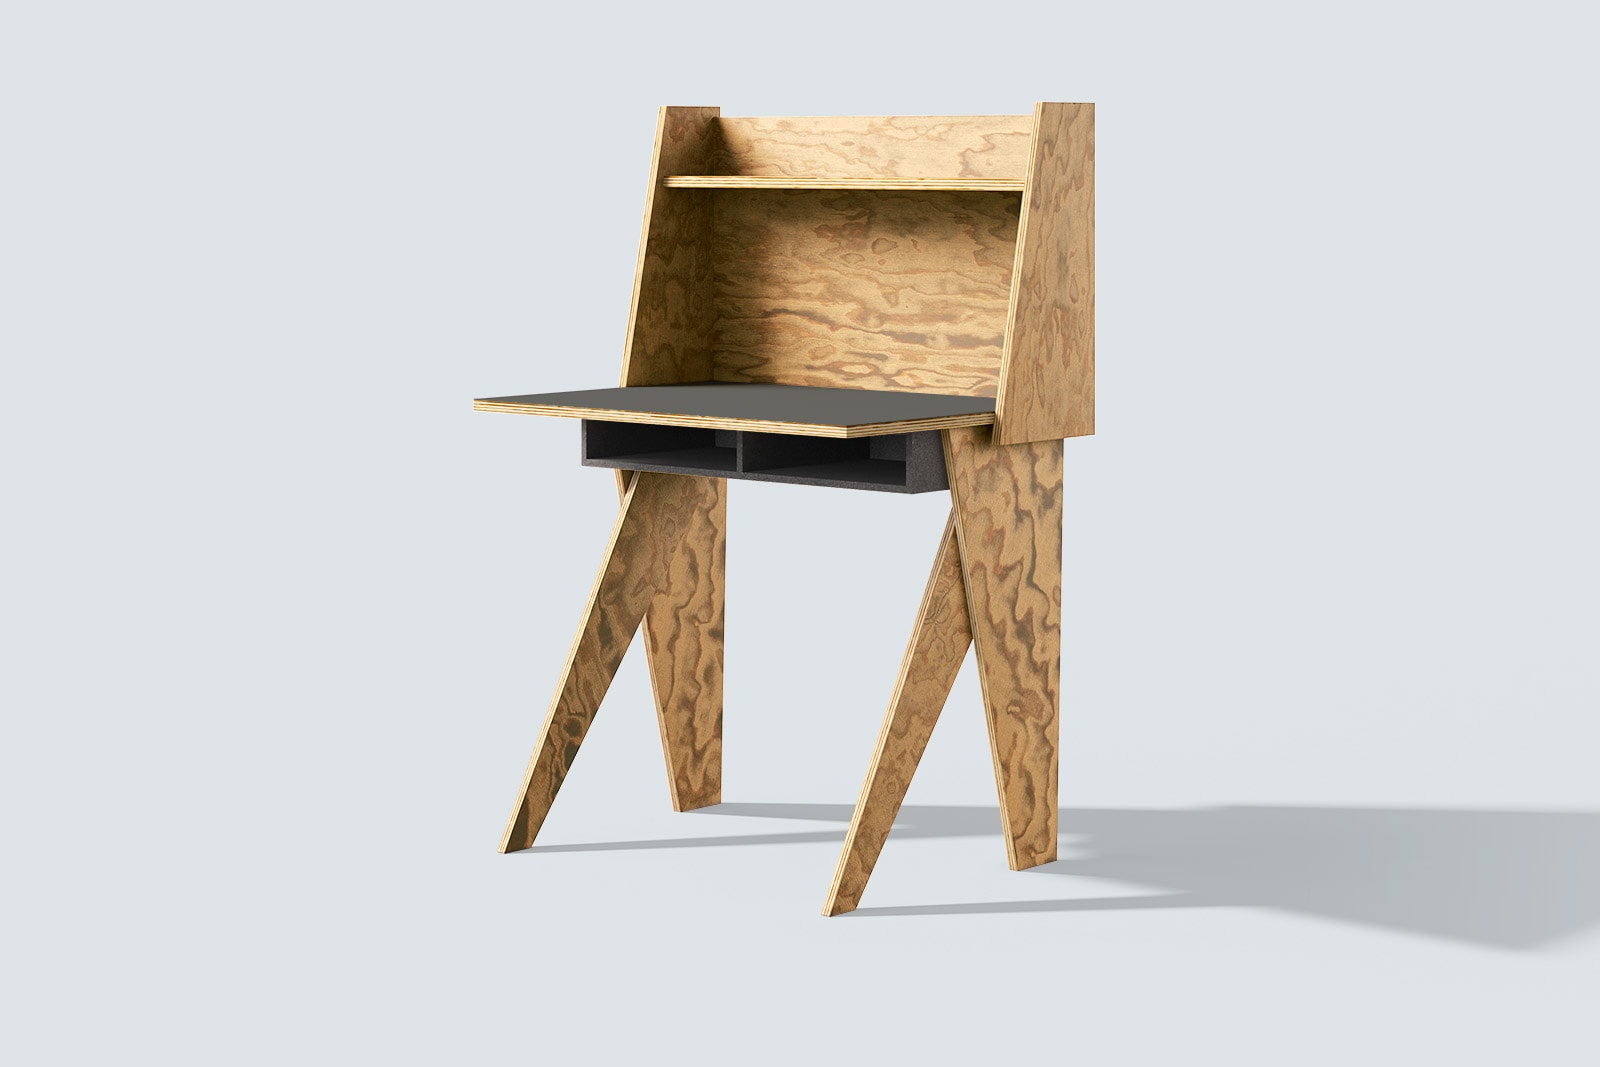 muesiemue Home Office Tisch von Tonia Welter, Tisch und Raumteiler elegant und kompakt vereint, in Seekiefer